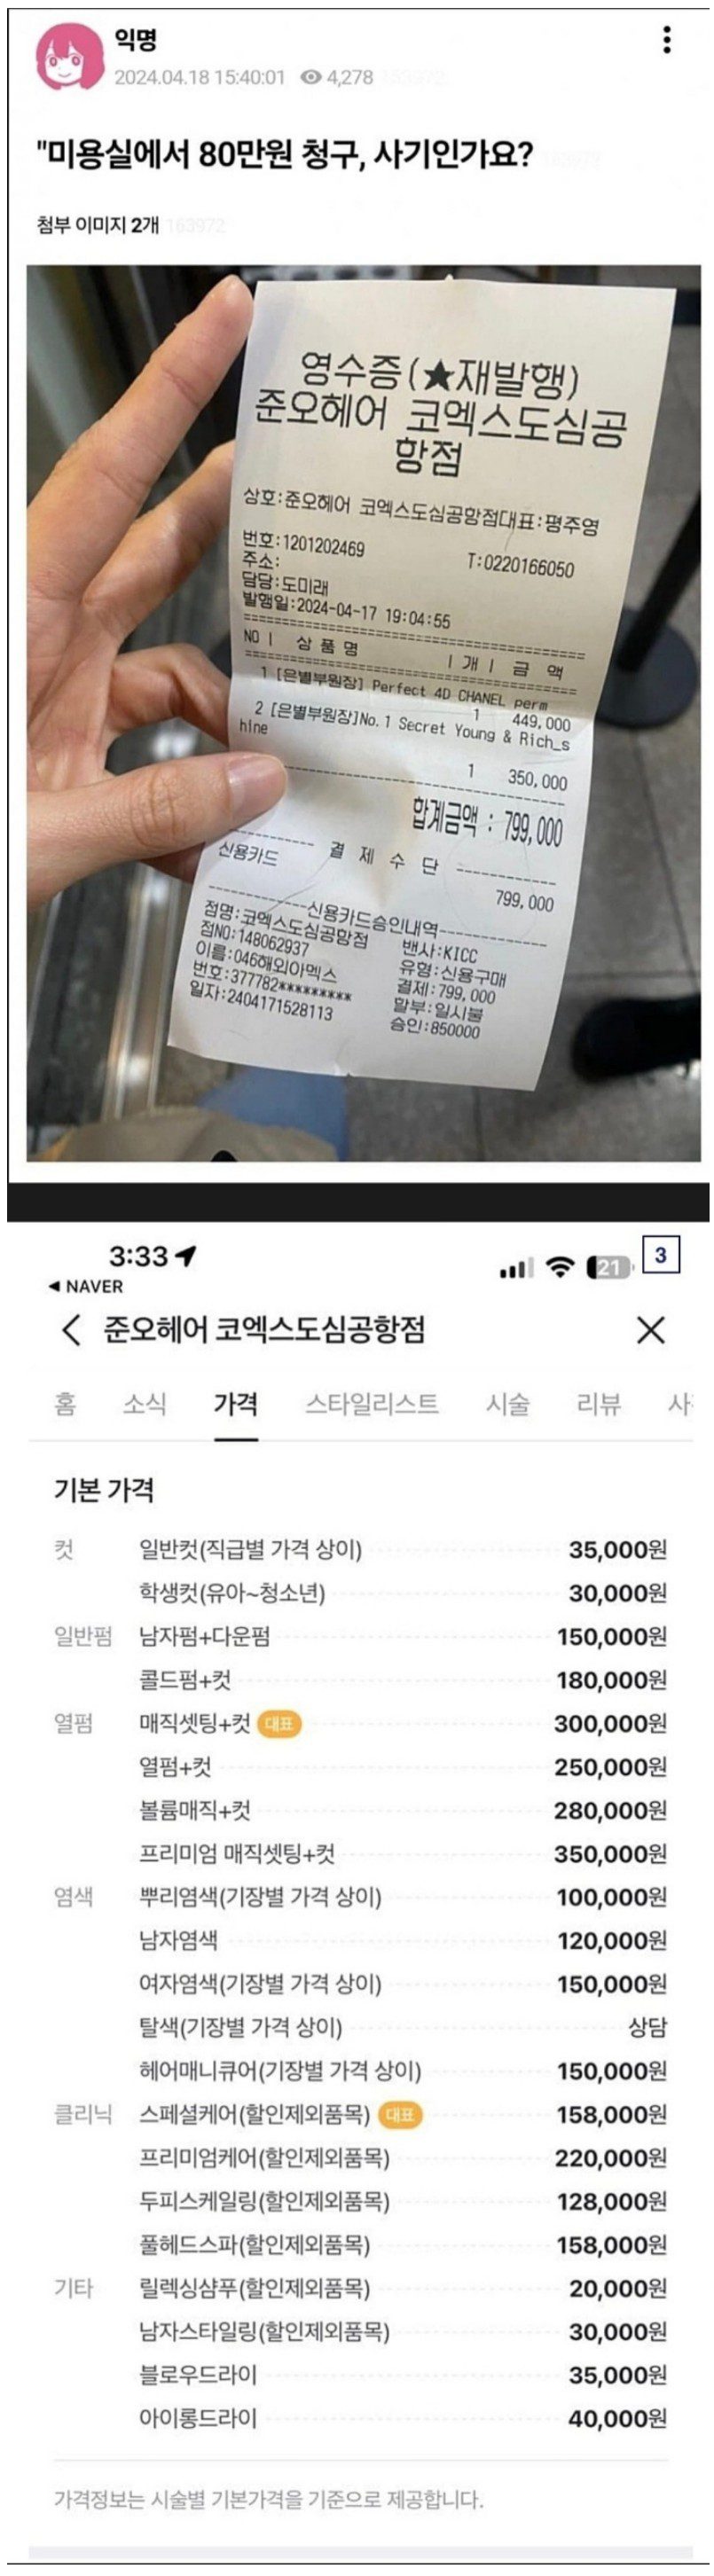 한국 미용실 가격 80만원 나온 일본인 친구